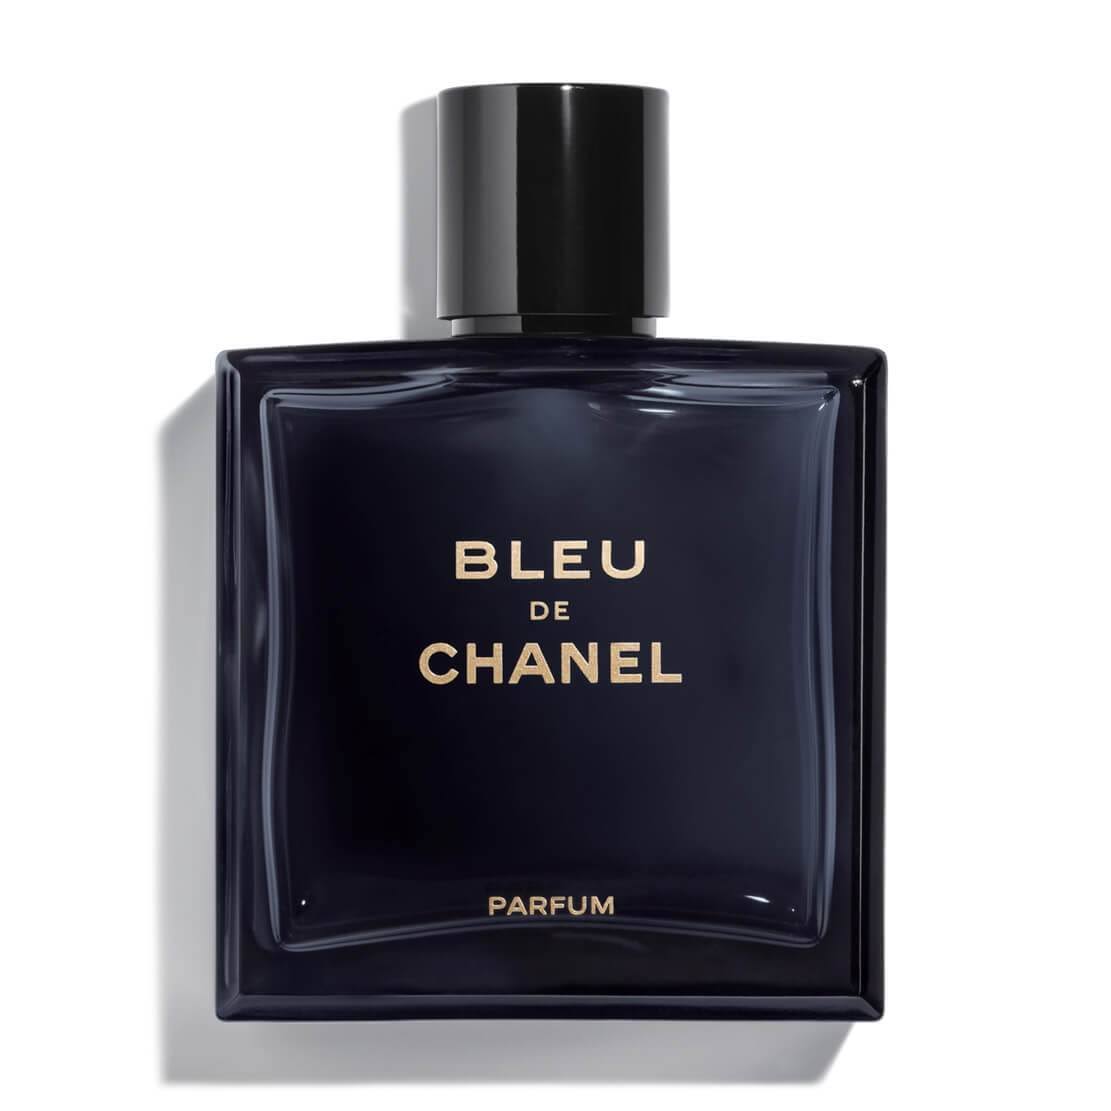 Bleu De Chanel Parfum Spray 100ml - CHANEL